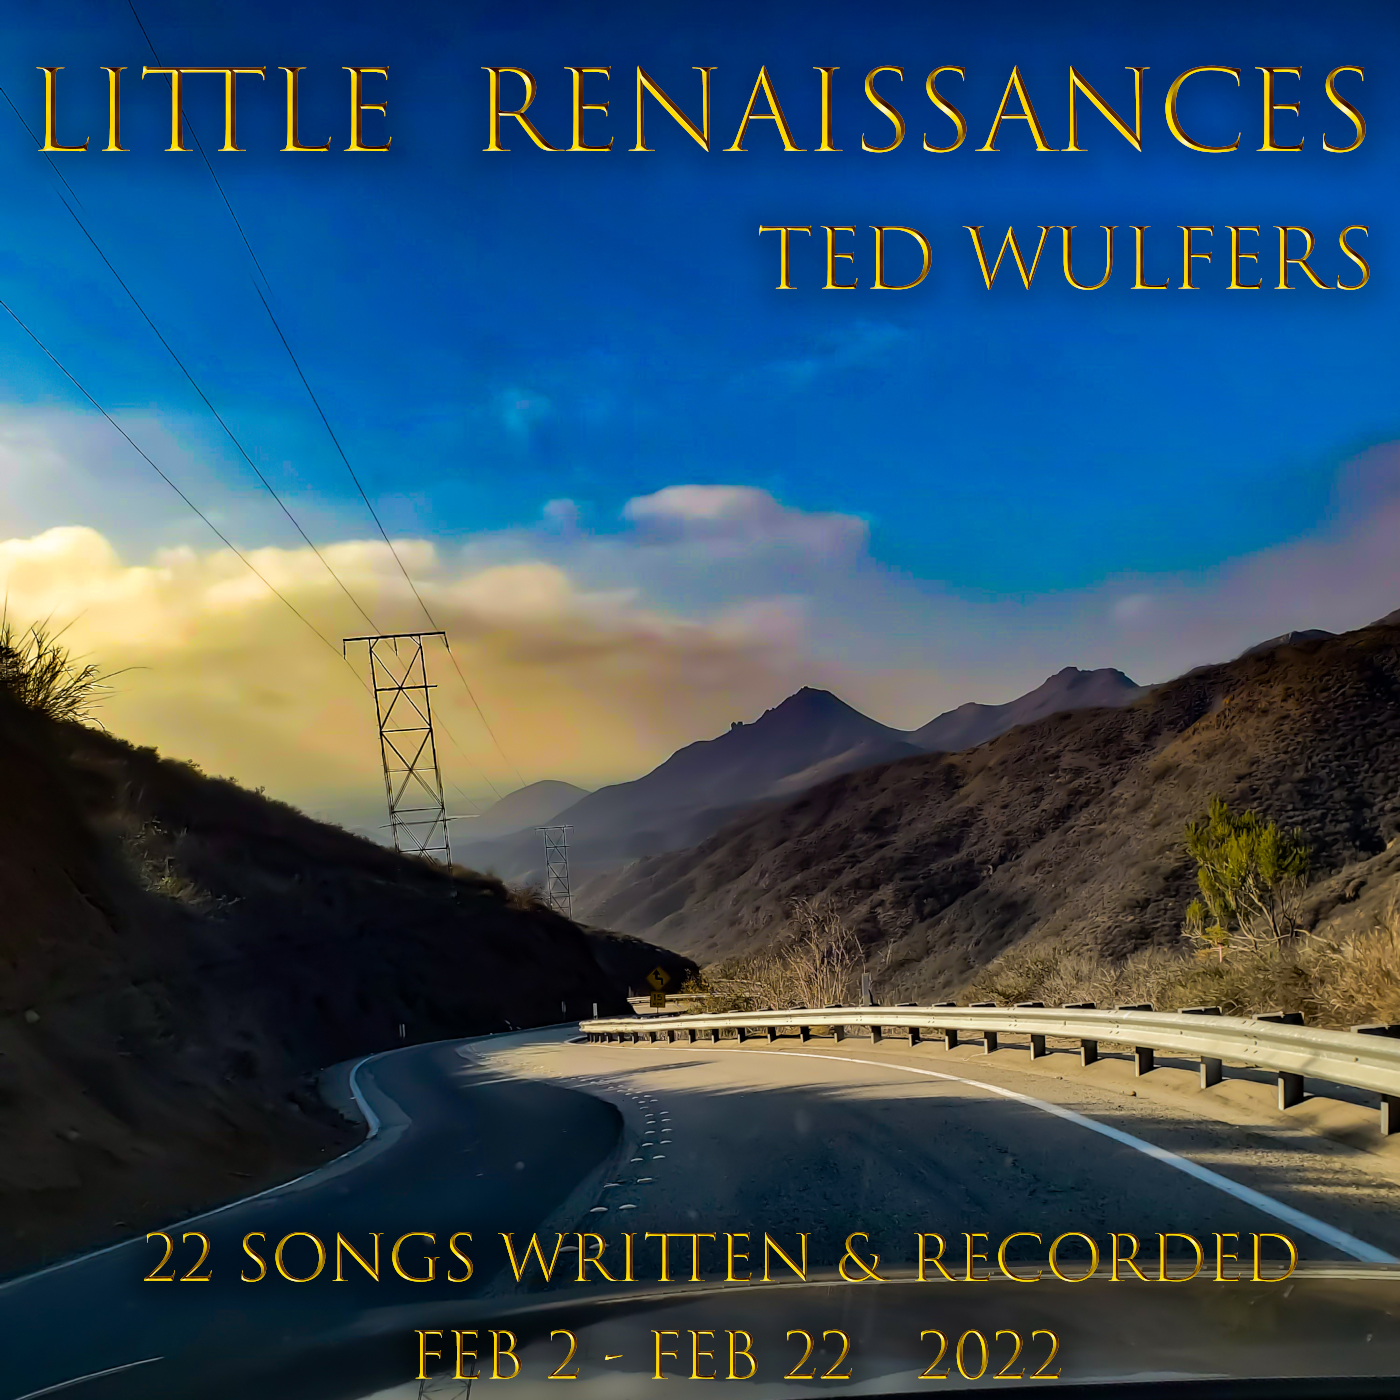 TED RELEASES 11th ALBUM ON 2.22.22 – LITTLE RENAISSANCES